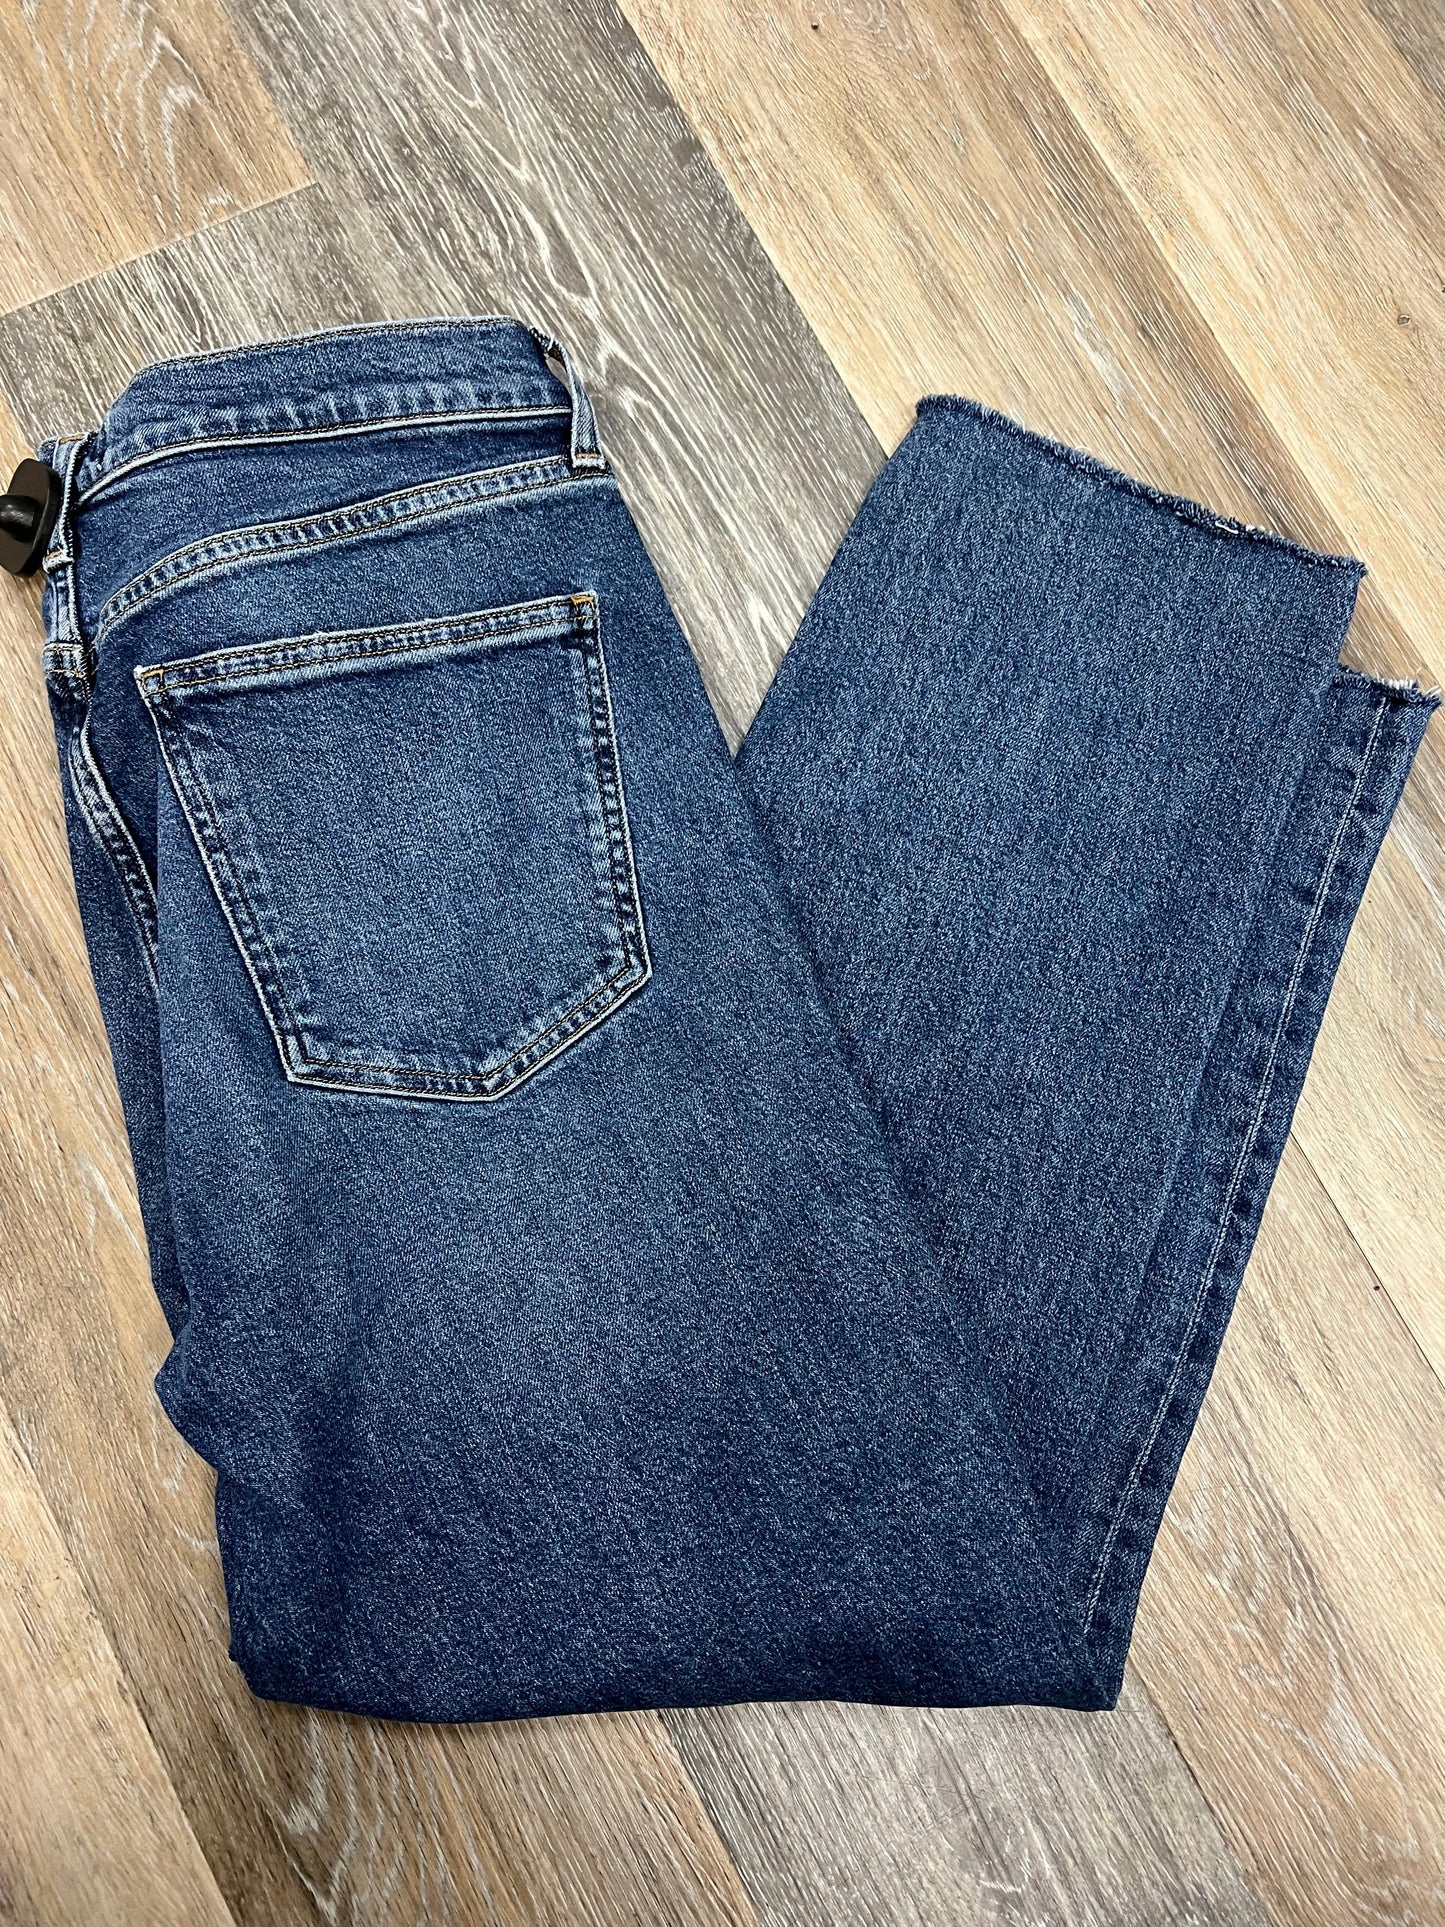 Blue Denim Jeans Designer Agolde, Size 8/29